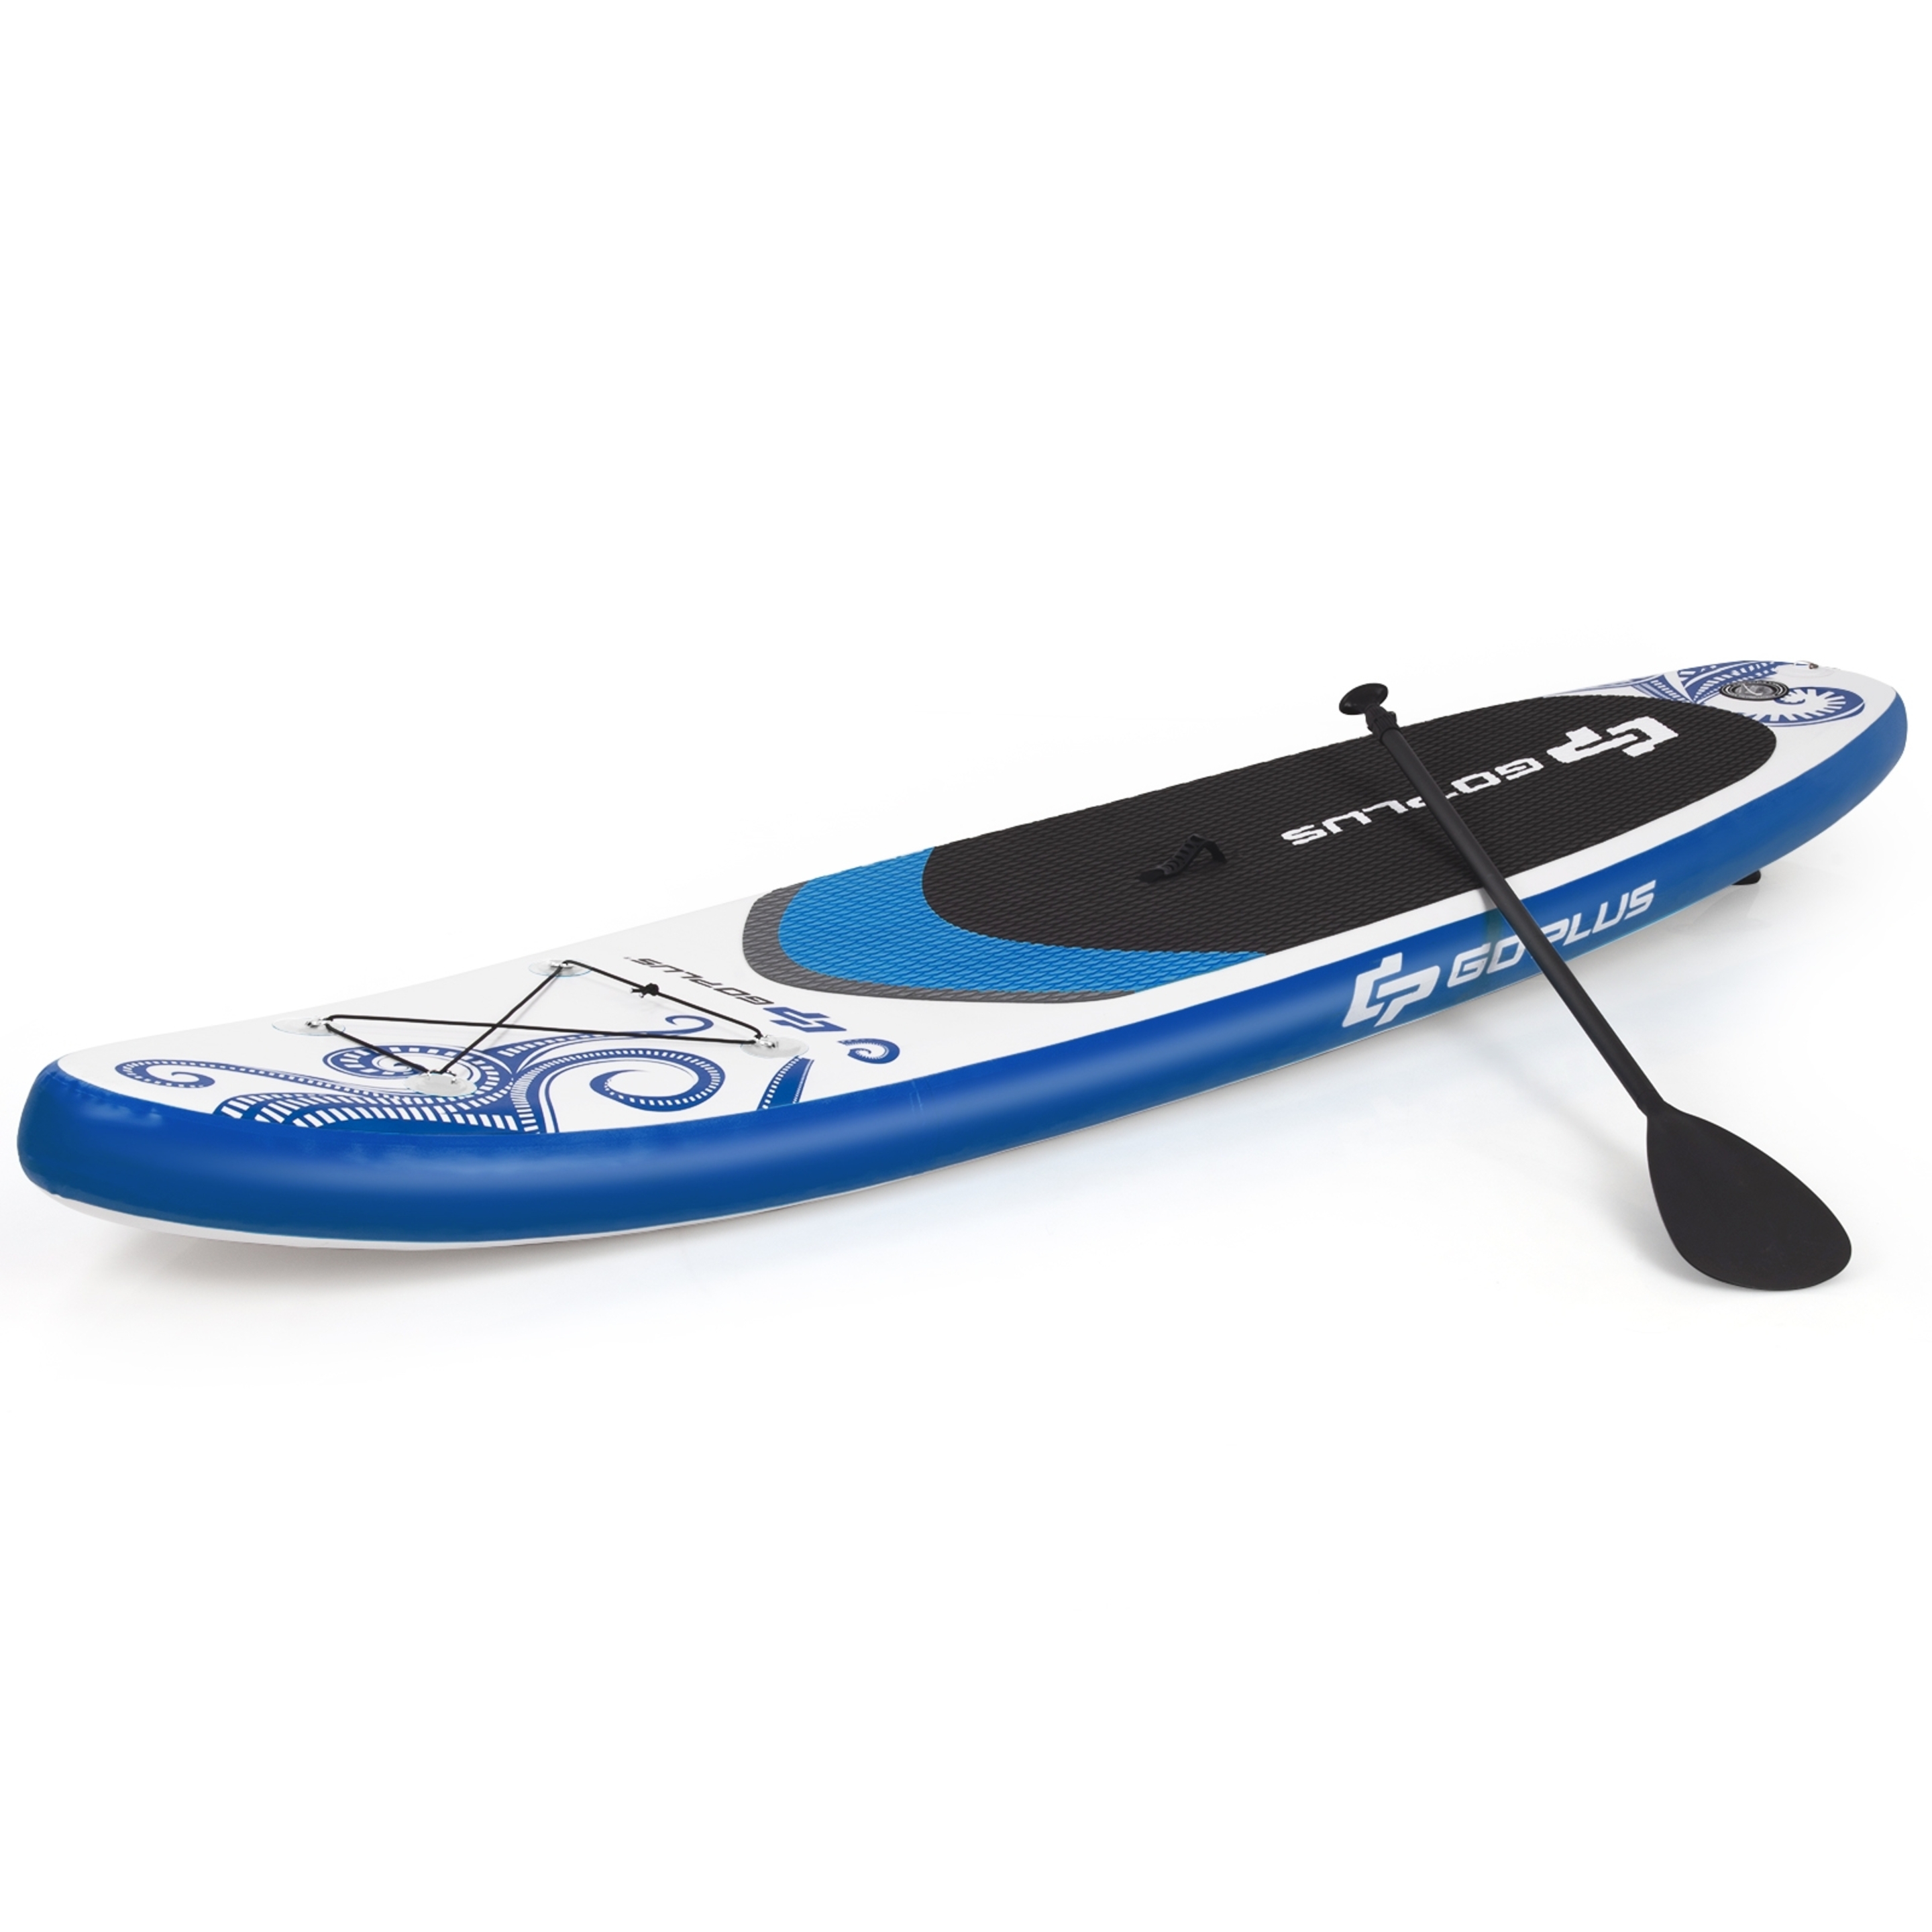 Tabla Inflable De Paddle Sup Costway - Azul/Blanco - Con Accesorios  MKP